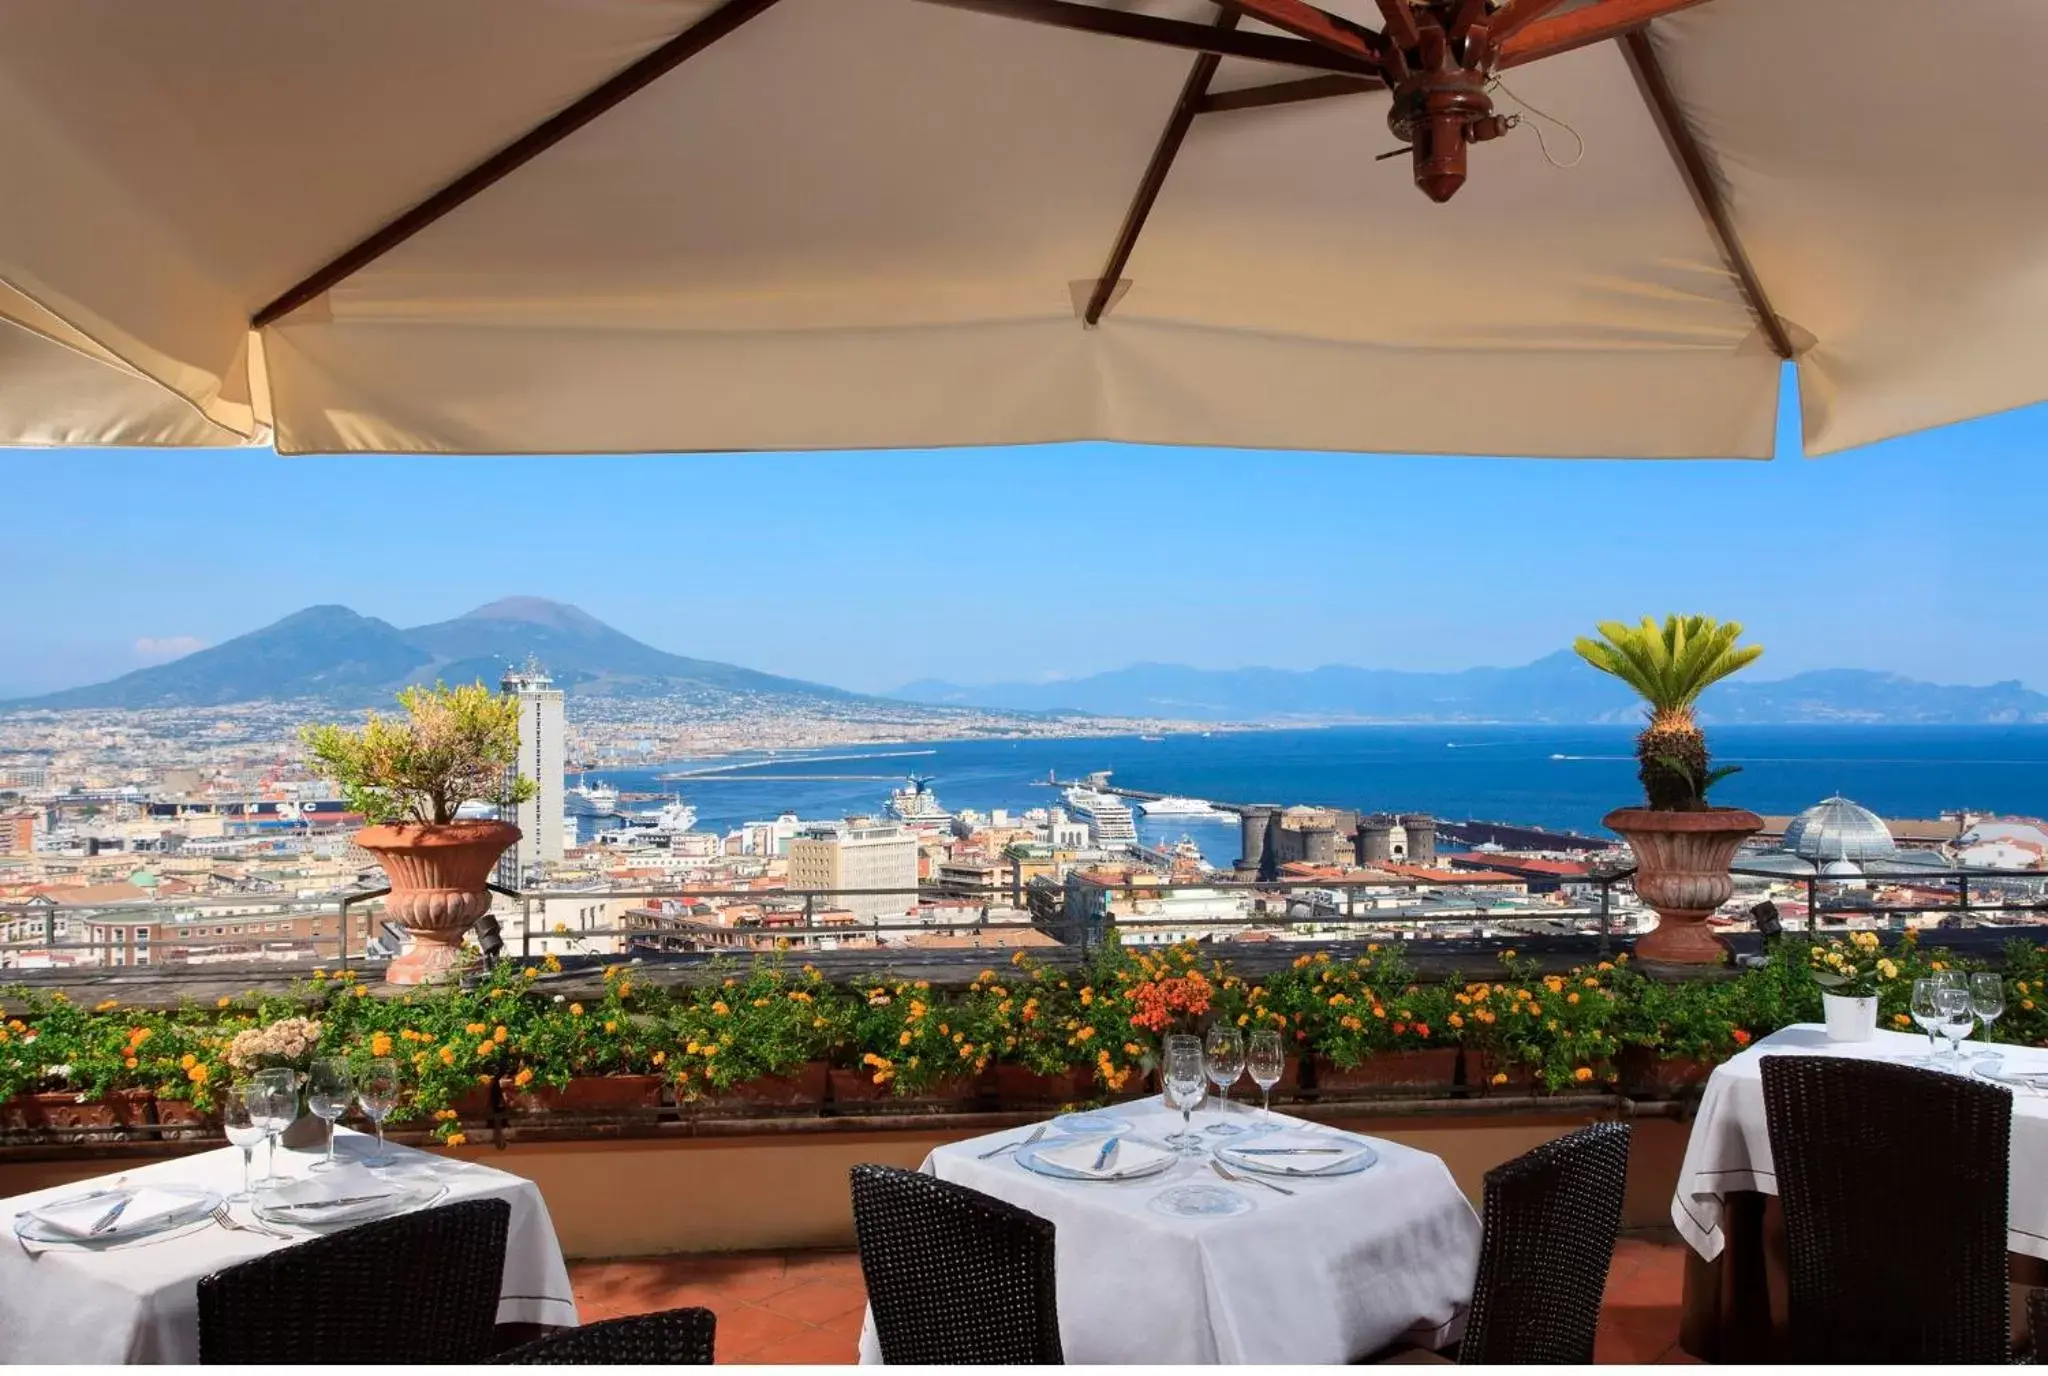 Restaurant/places to eat in San Francesco al Monte